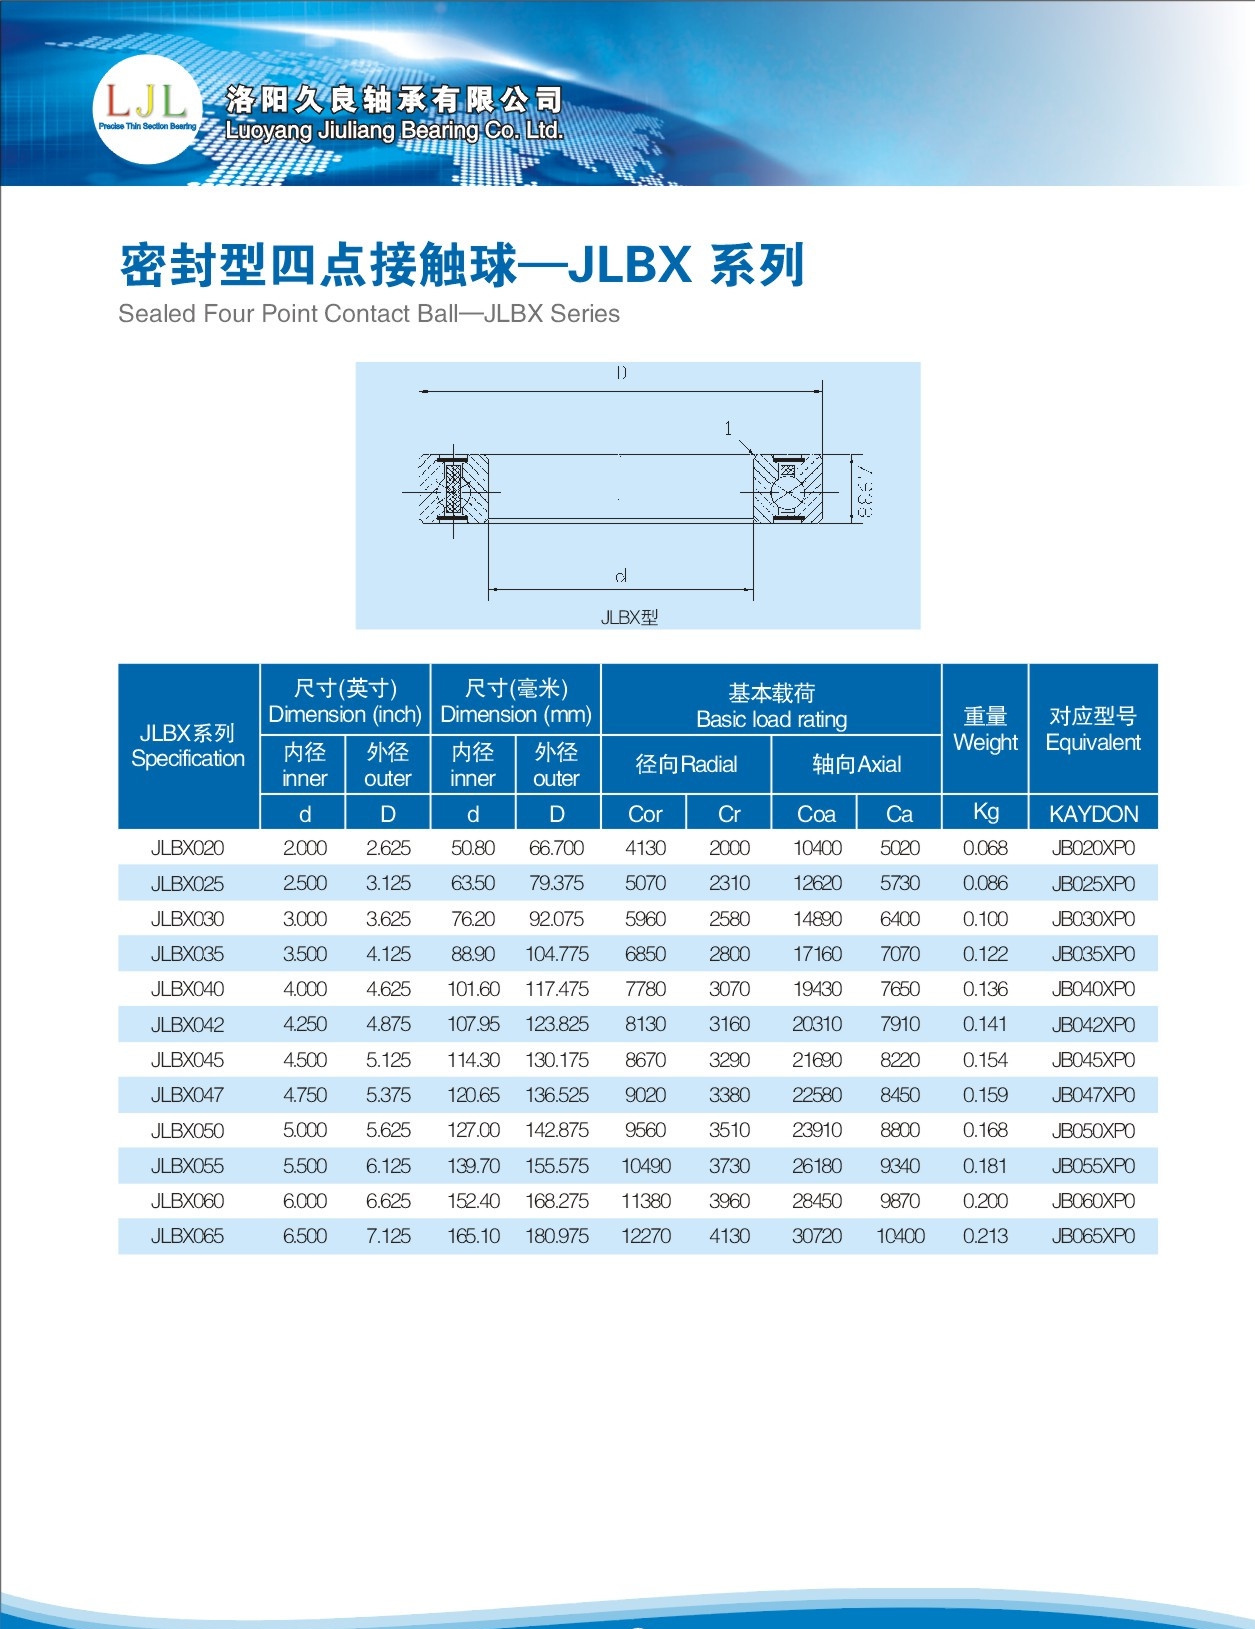 JLBX020	 | 
JLBX025	 | 
JLBX030	 | 
JLBX035	 | 
JLBX040	 | 
JLBX042	 | 
JLBX045	 | 
JLBX047	 | 
JLBX050	 | 
JLBX055	 | 
JLBX060	 | 
JLBX065	 | 